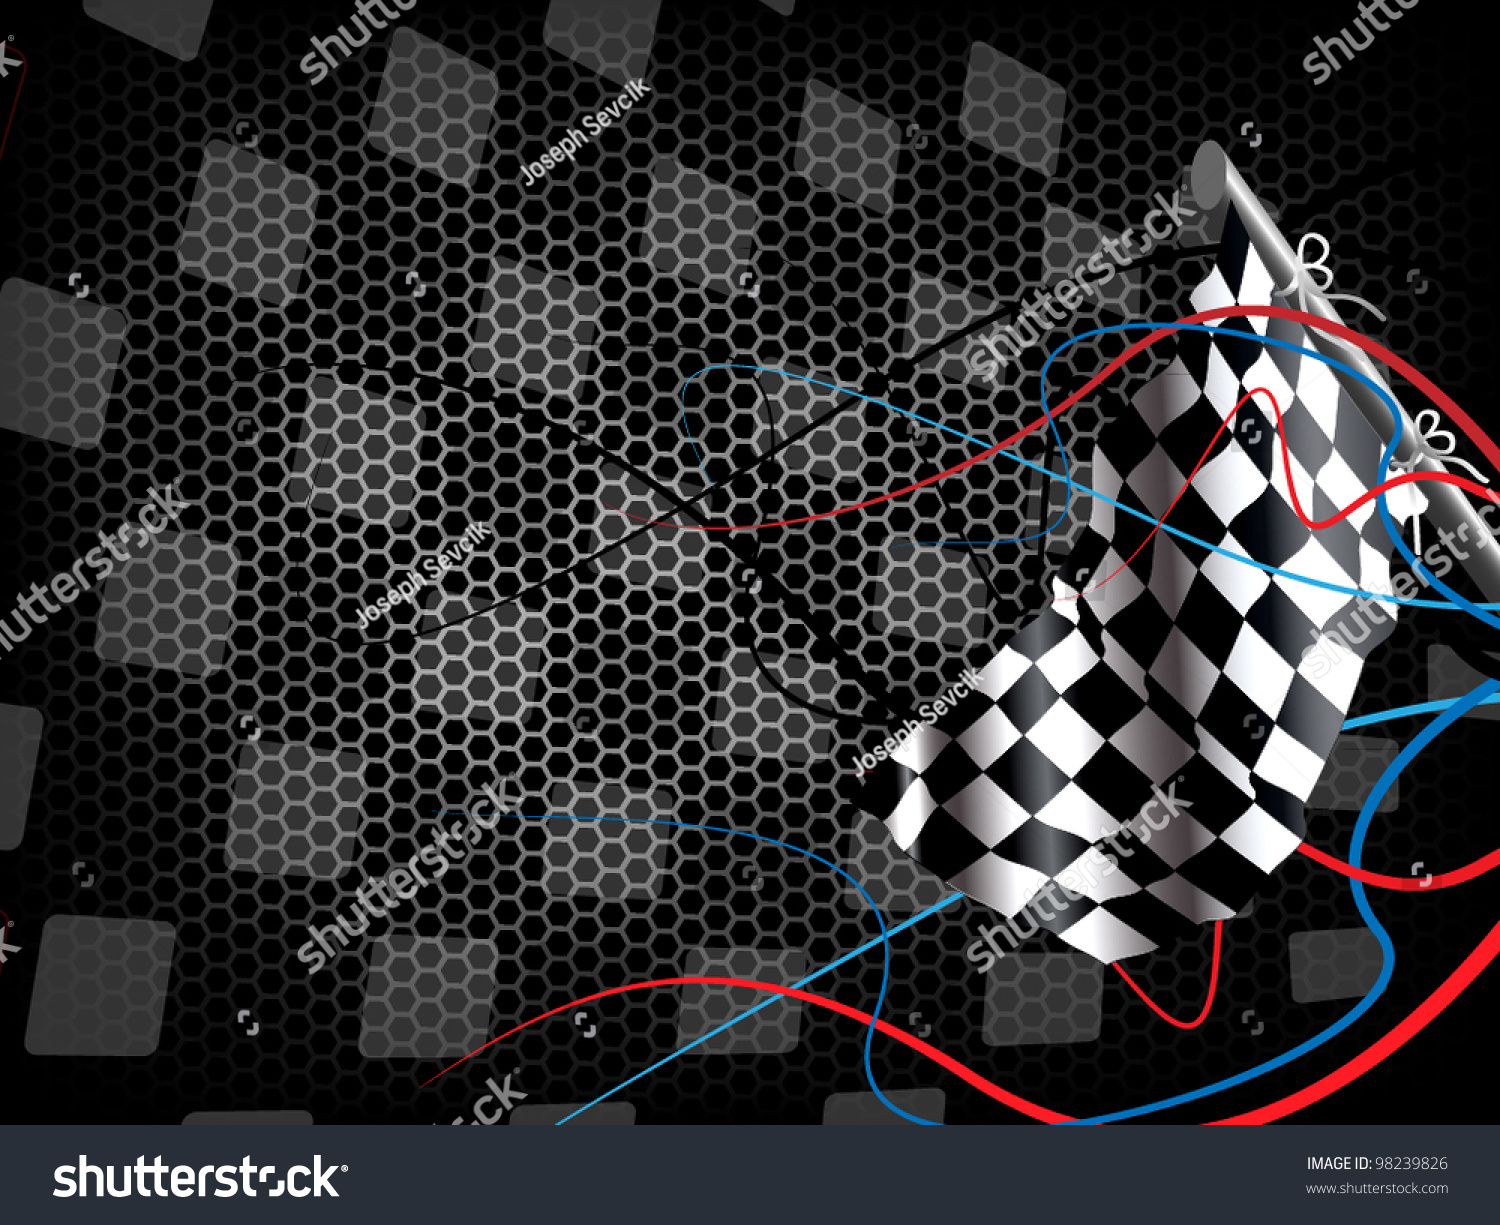 Racing Background Stock Vector 98239826 - Shutterstock